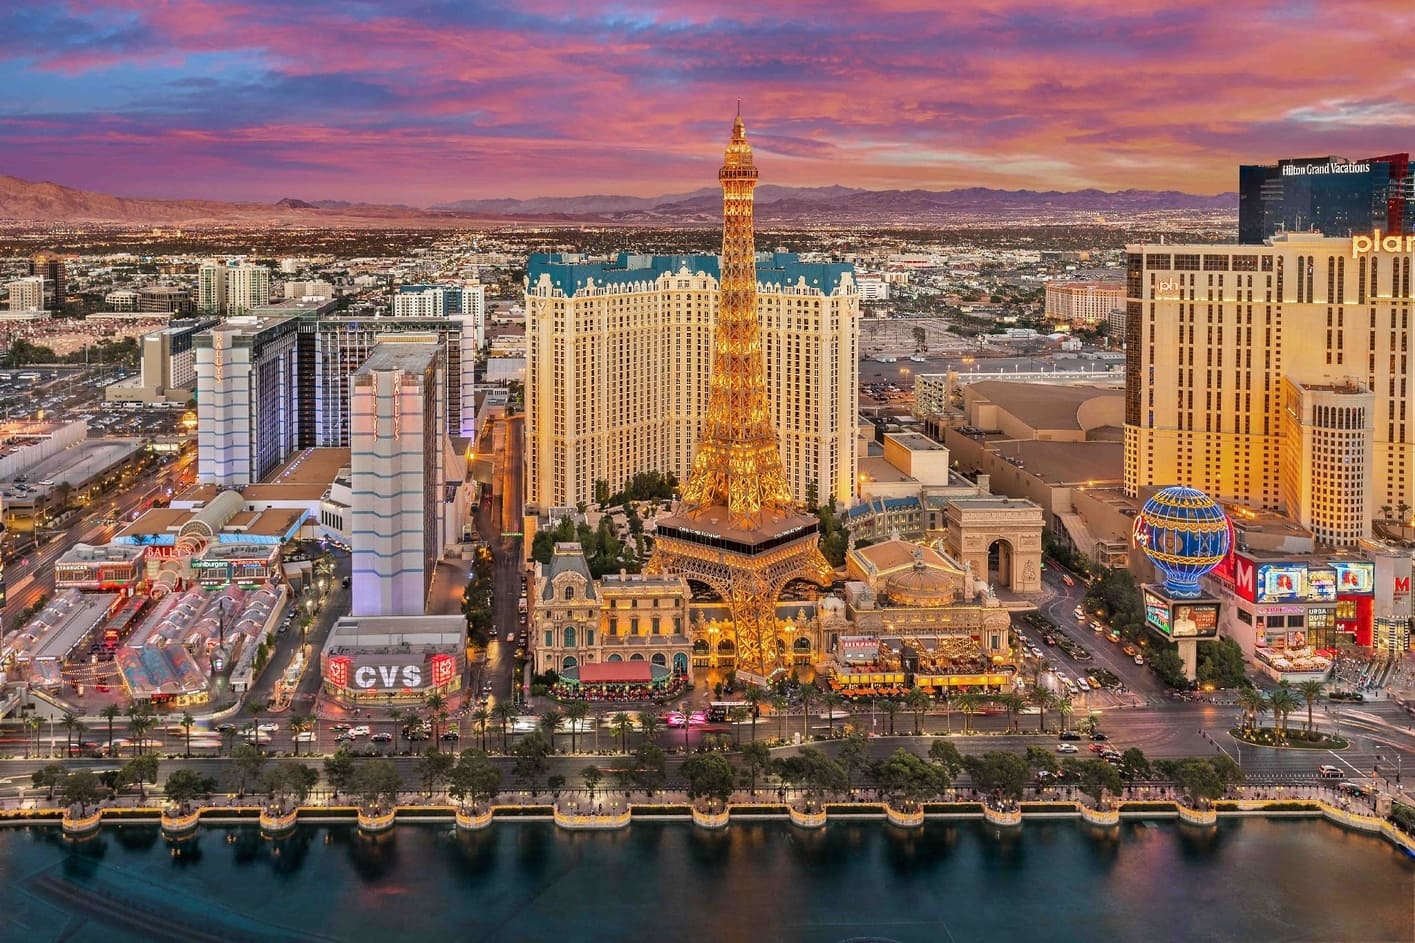 Las Vegasin kasinoiden suurimmat omistajat ja kasinot